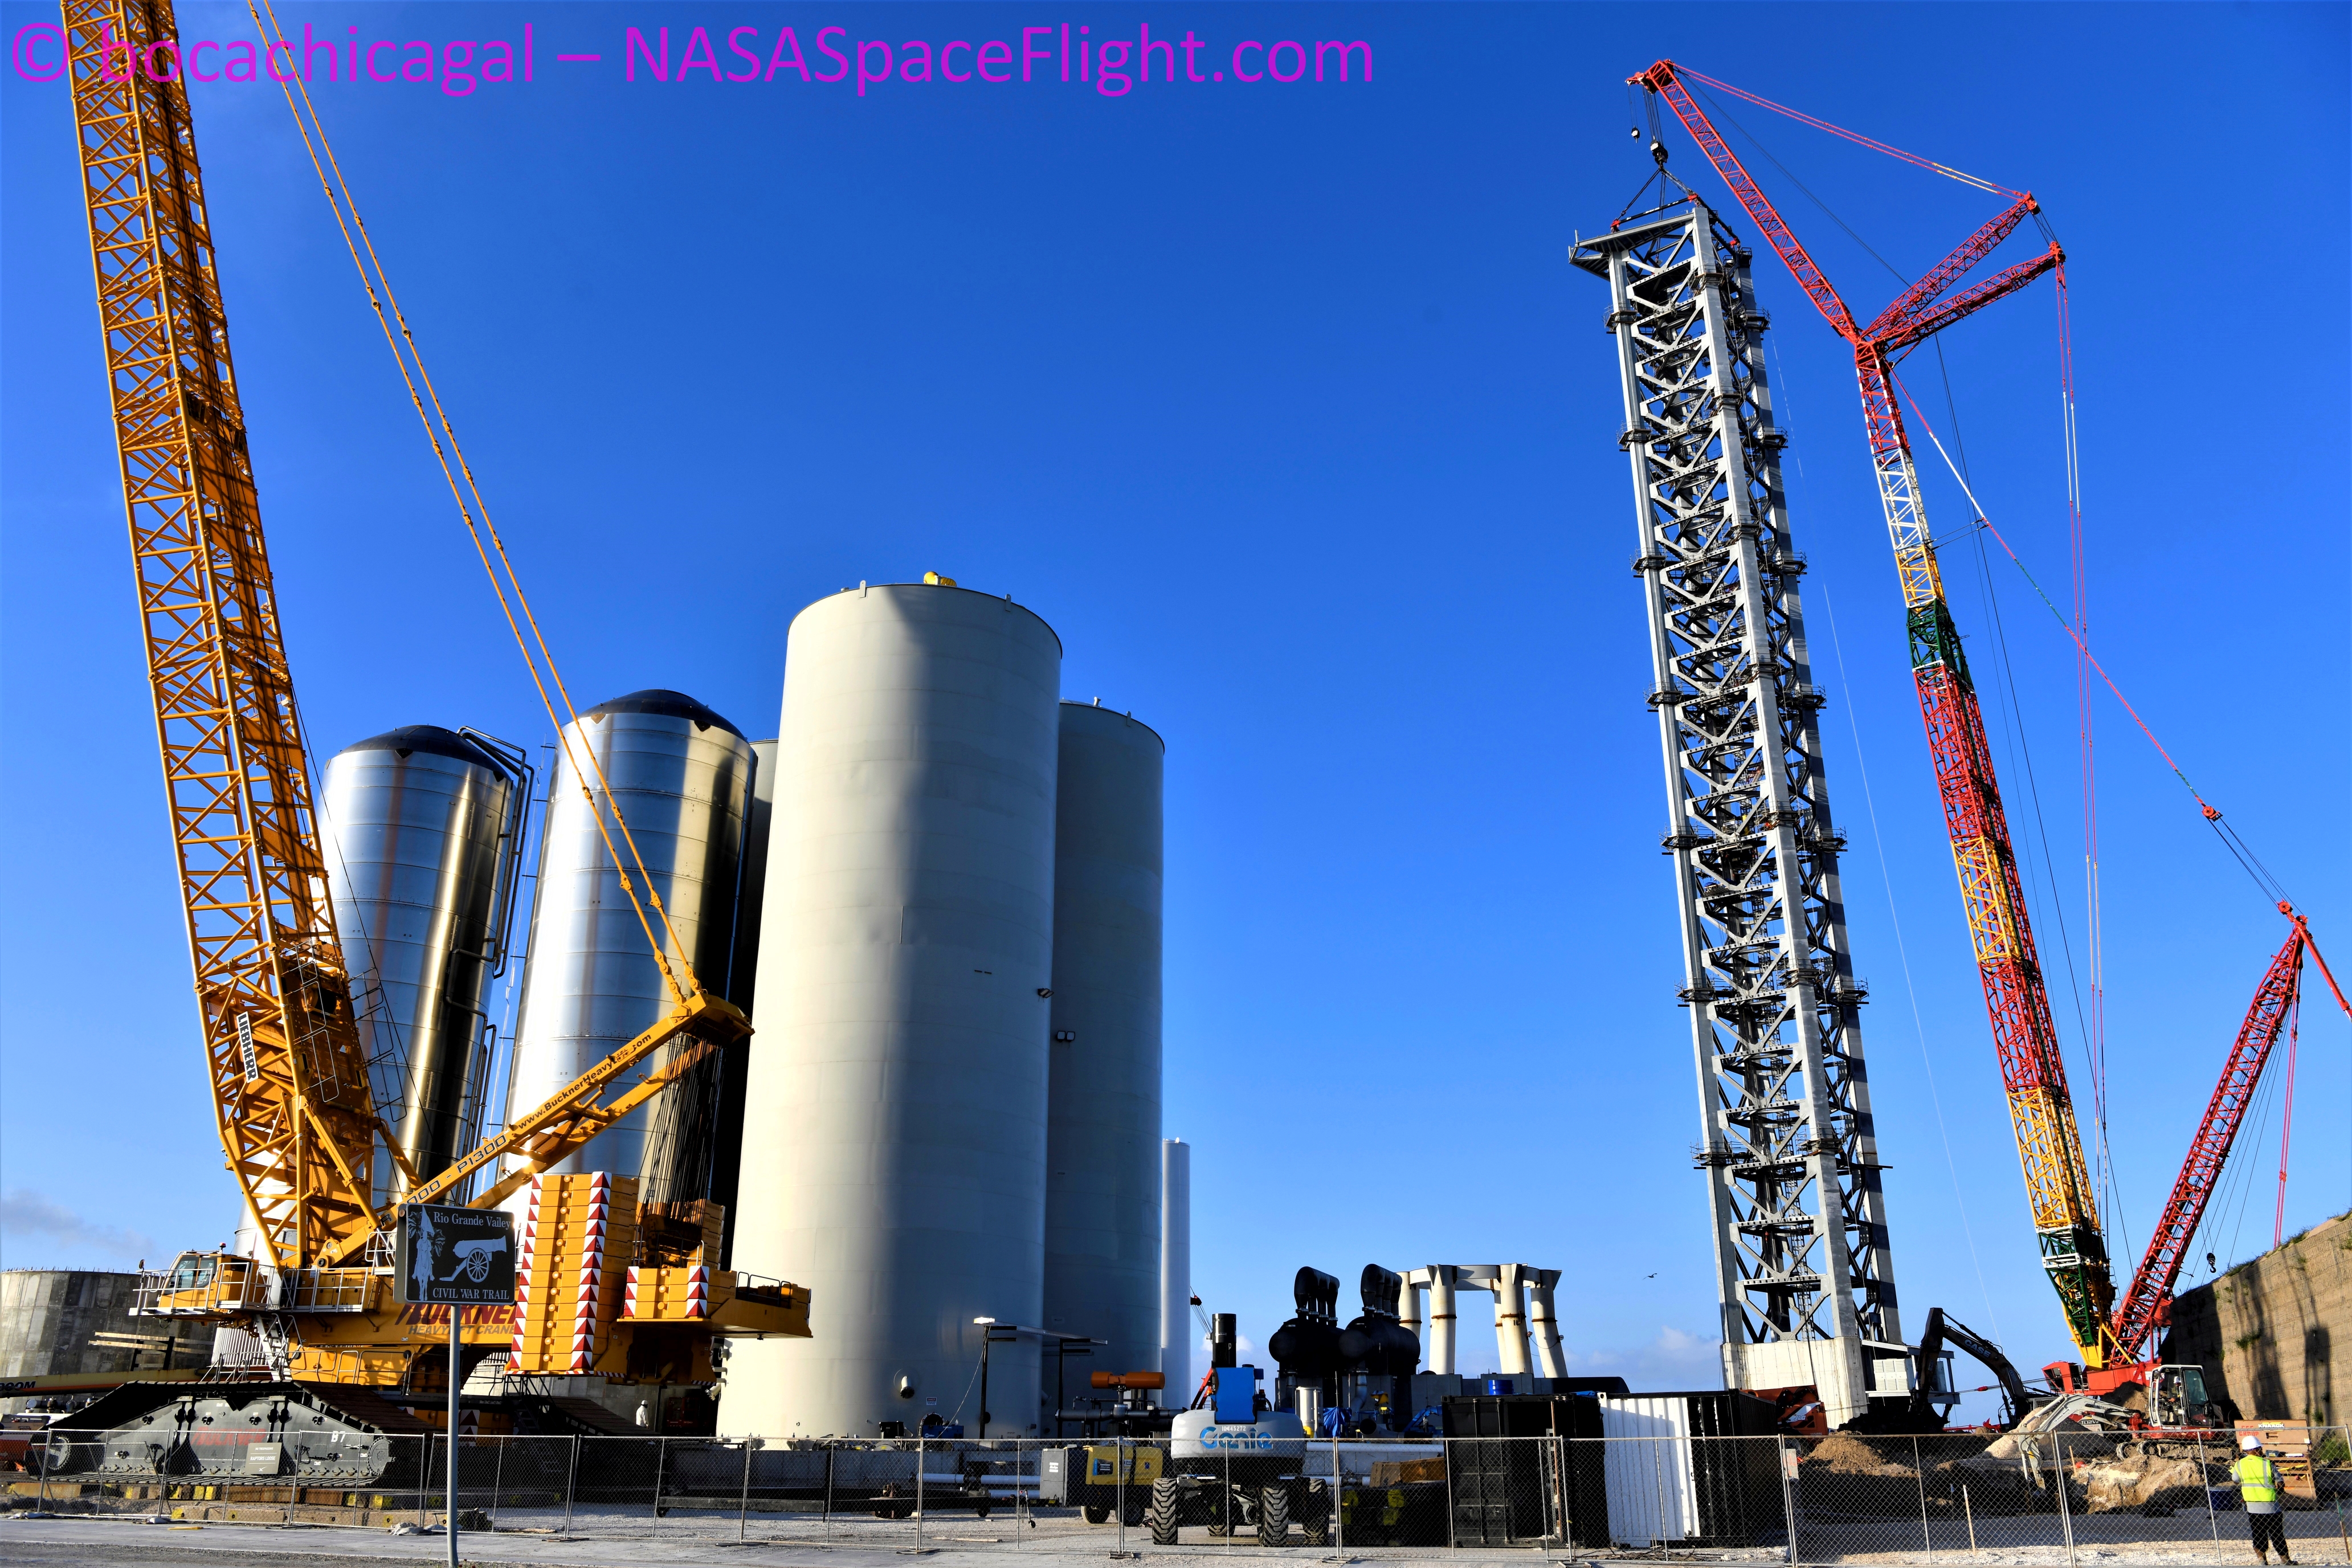 Zbiorniki i wieża na terenie orbitalnego kompleksu startowego (Źródło: BocaChicaGal dla NSF, NASASpaceFlight.com)